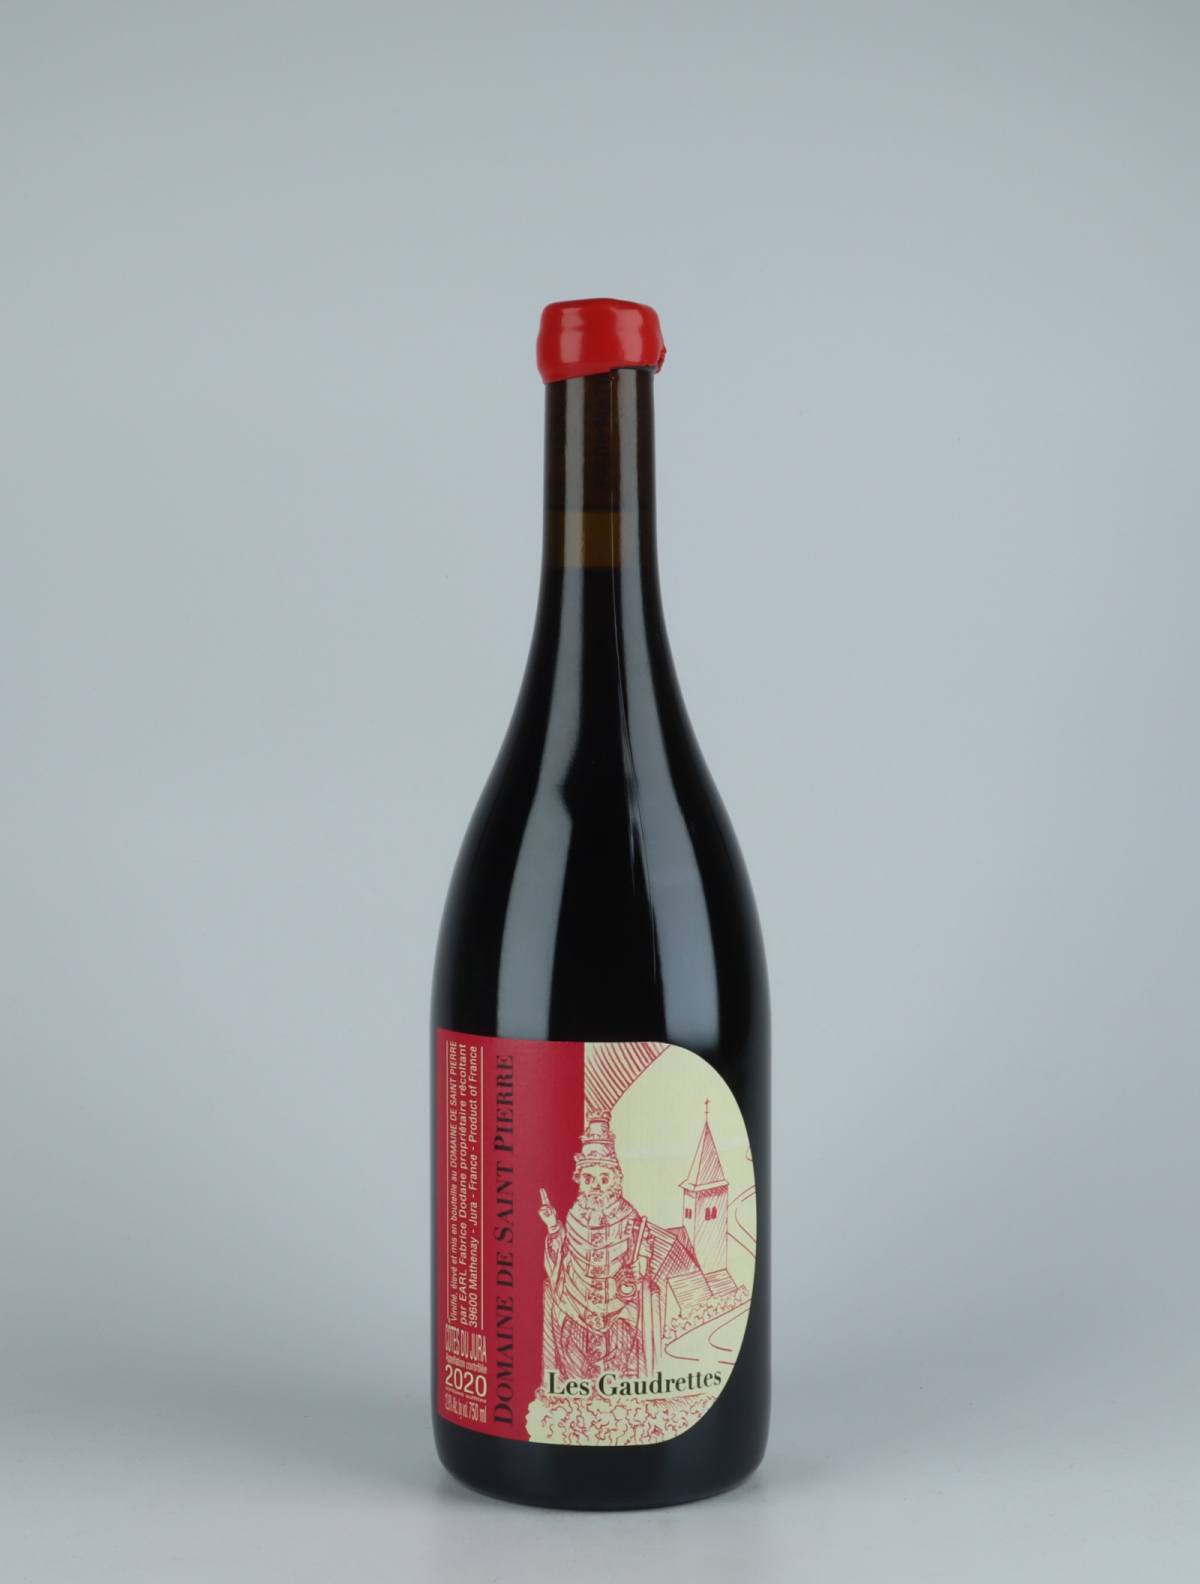 A bottle 2020 Côtes du Jura Rouge - Les Gaudrettes Red wine from Domaine de Saint Pierre, Jura in France